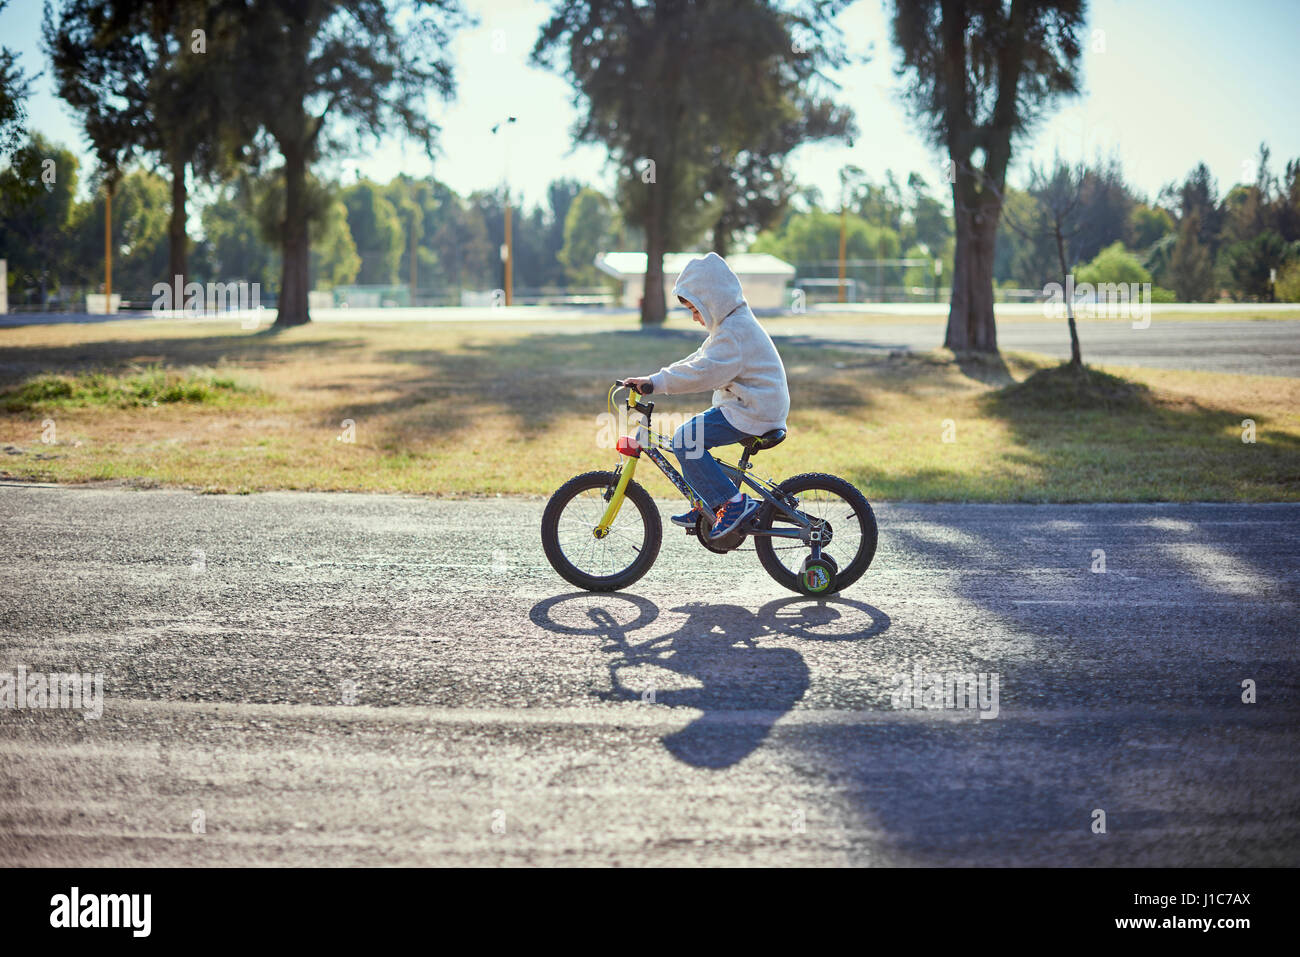 Hispanic boy riding bicycle avec roues de formation Banque D'Images